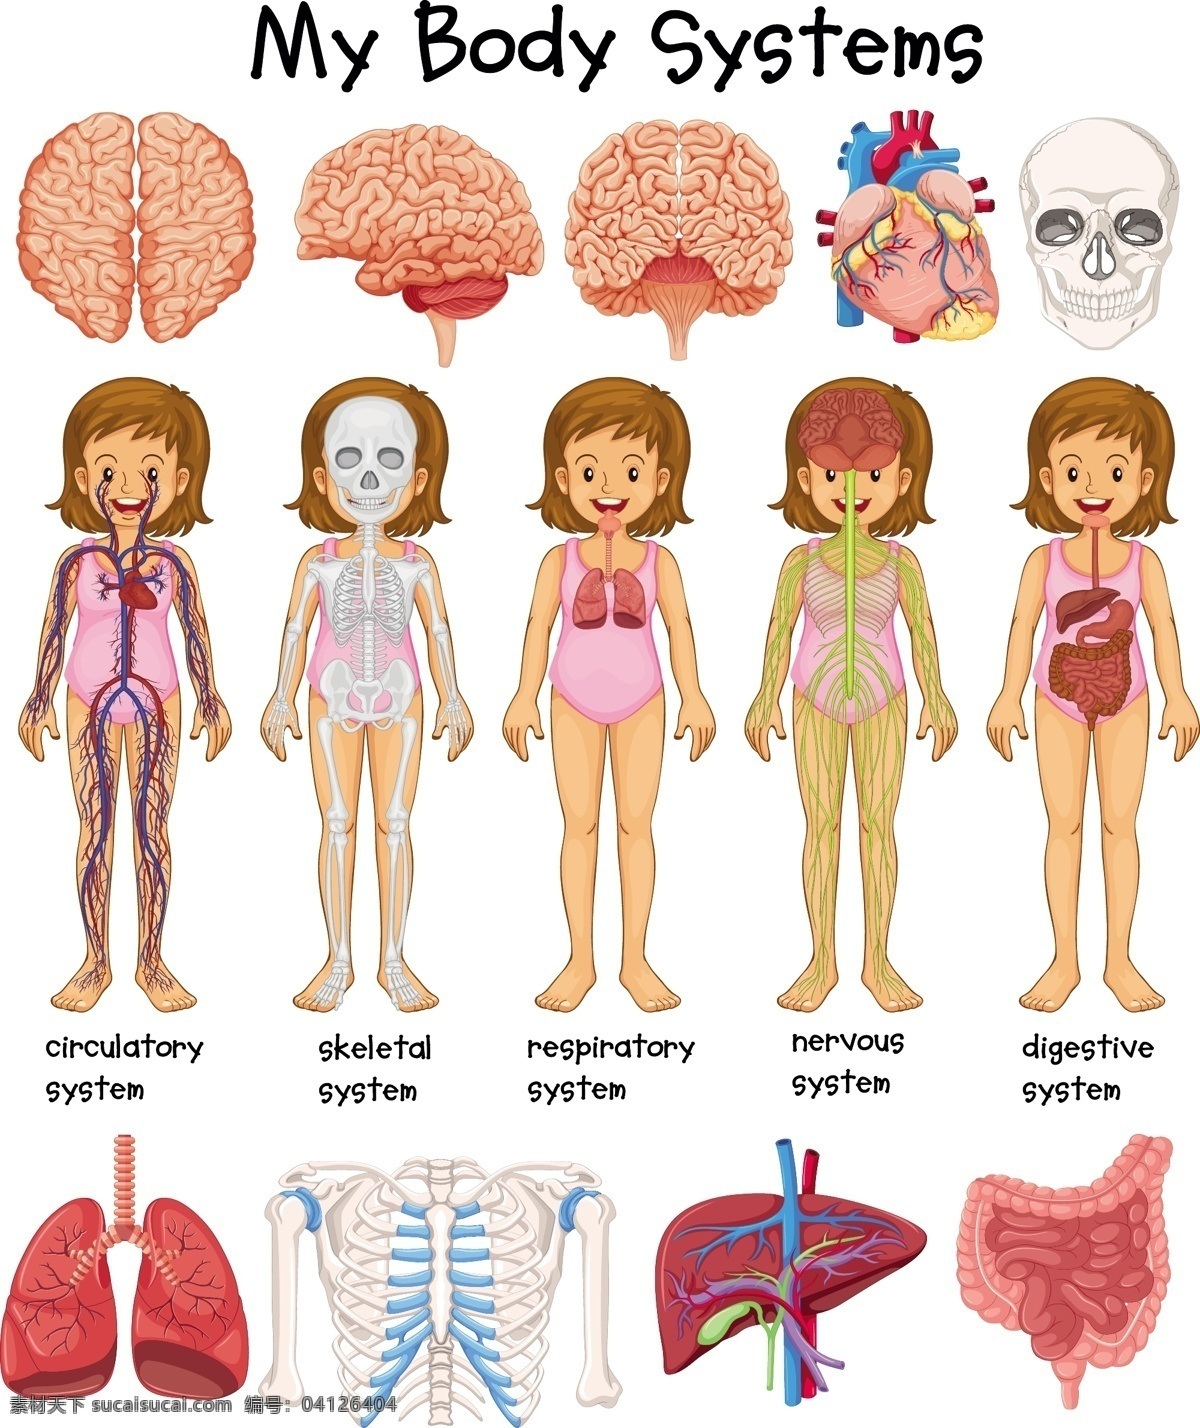 人体研究 心脏 医疗 大脑 可爱 学习 人 医学 人体 性格 系统 胃 骨头 收集 肺部 漂亮 器官 身体部位 神经